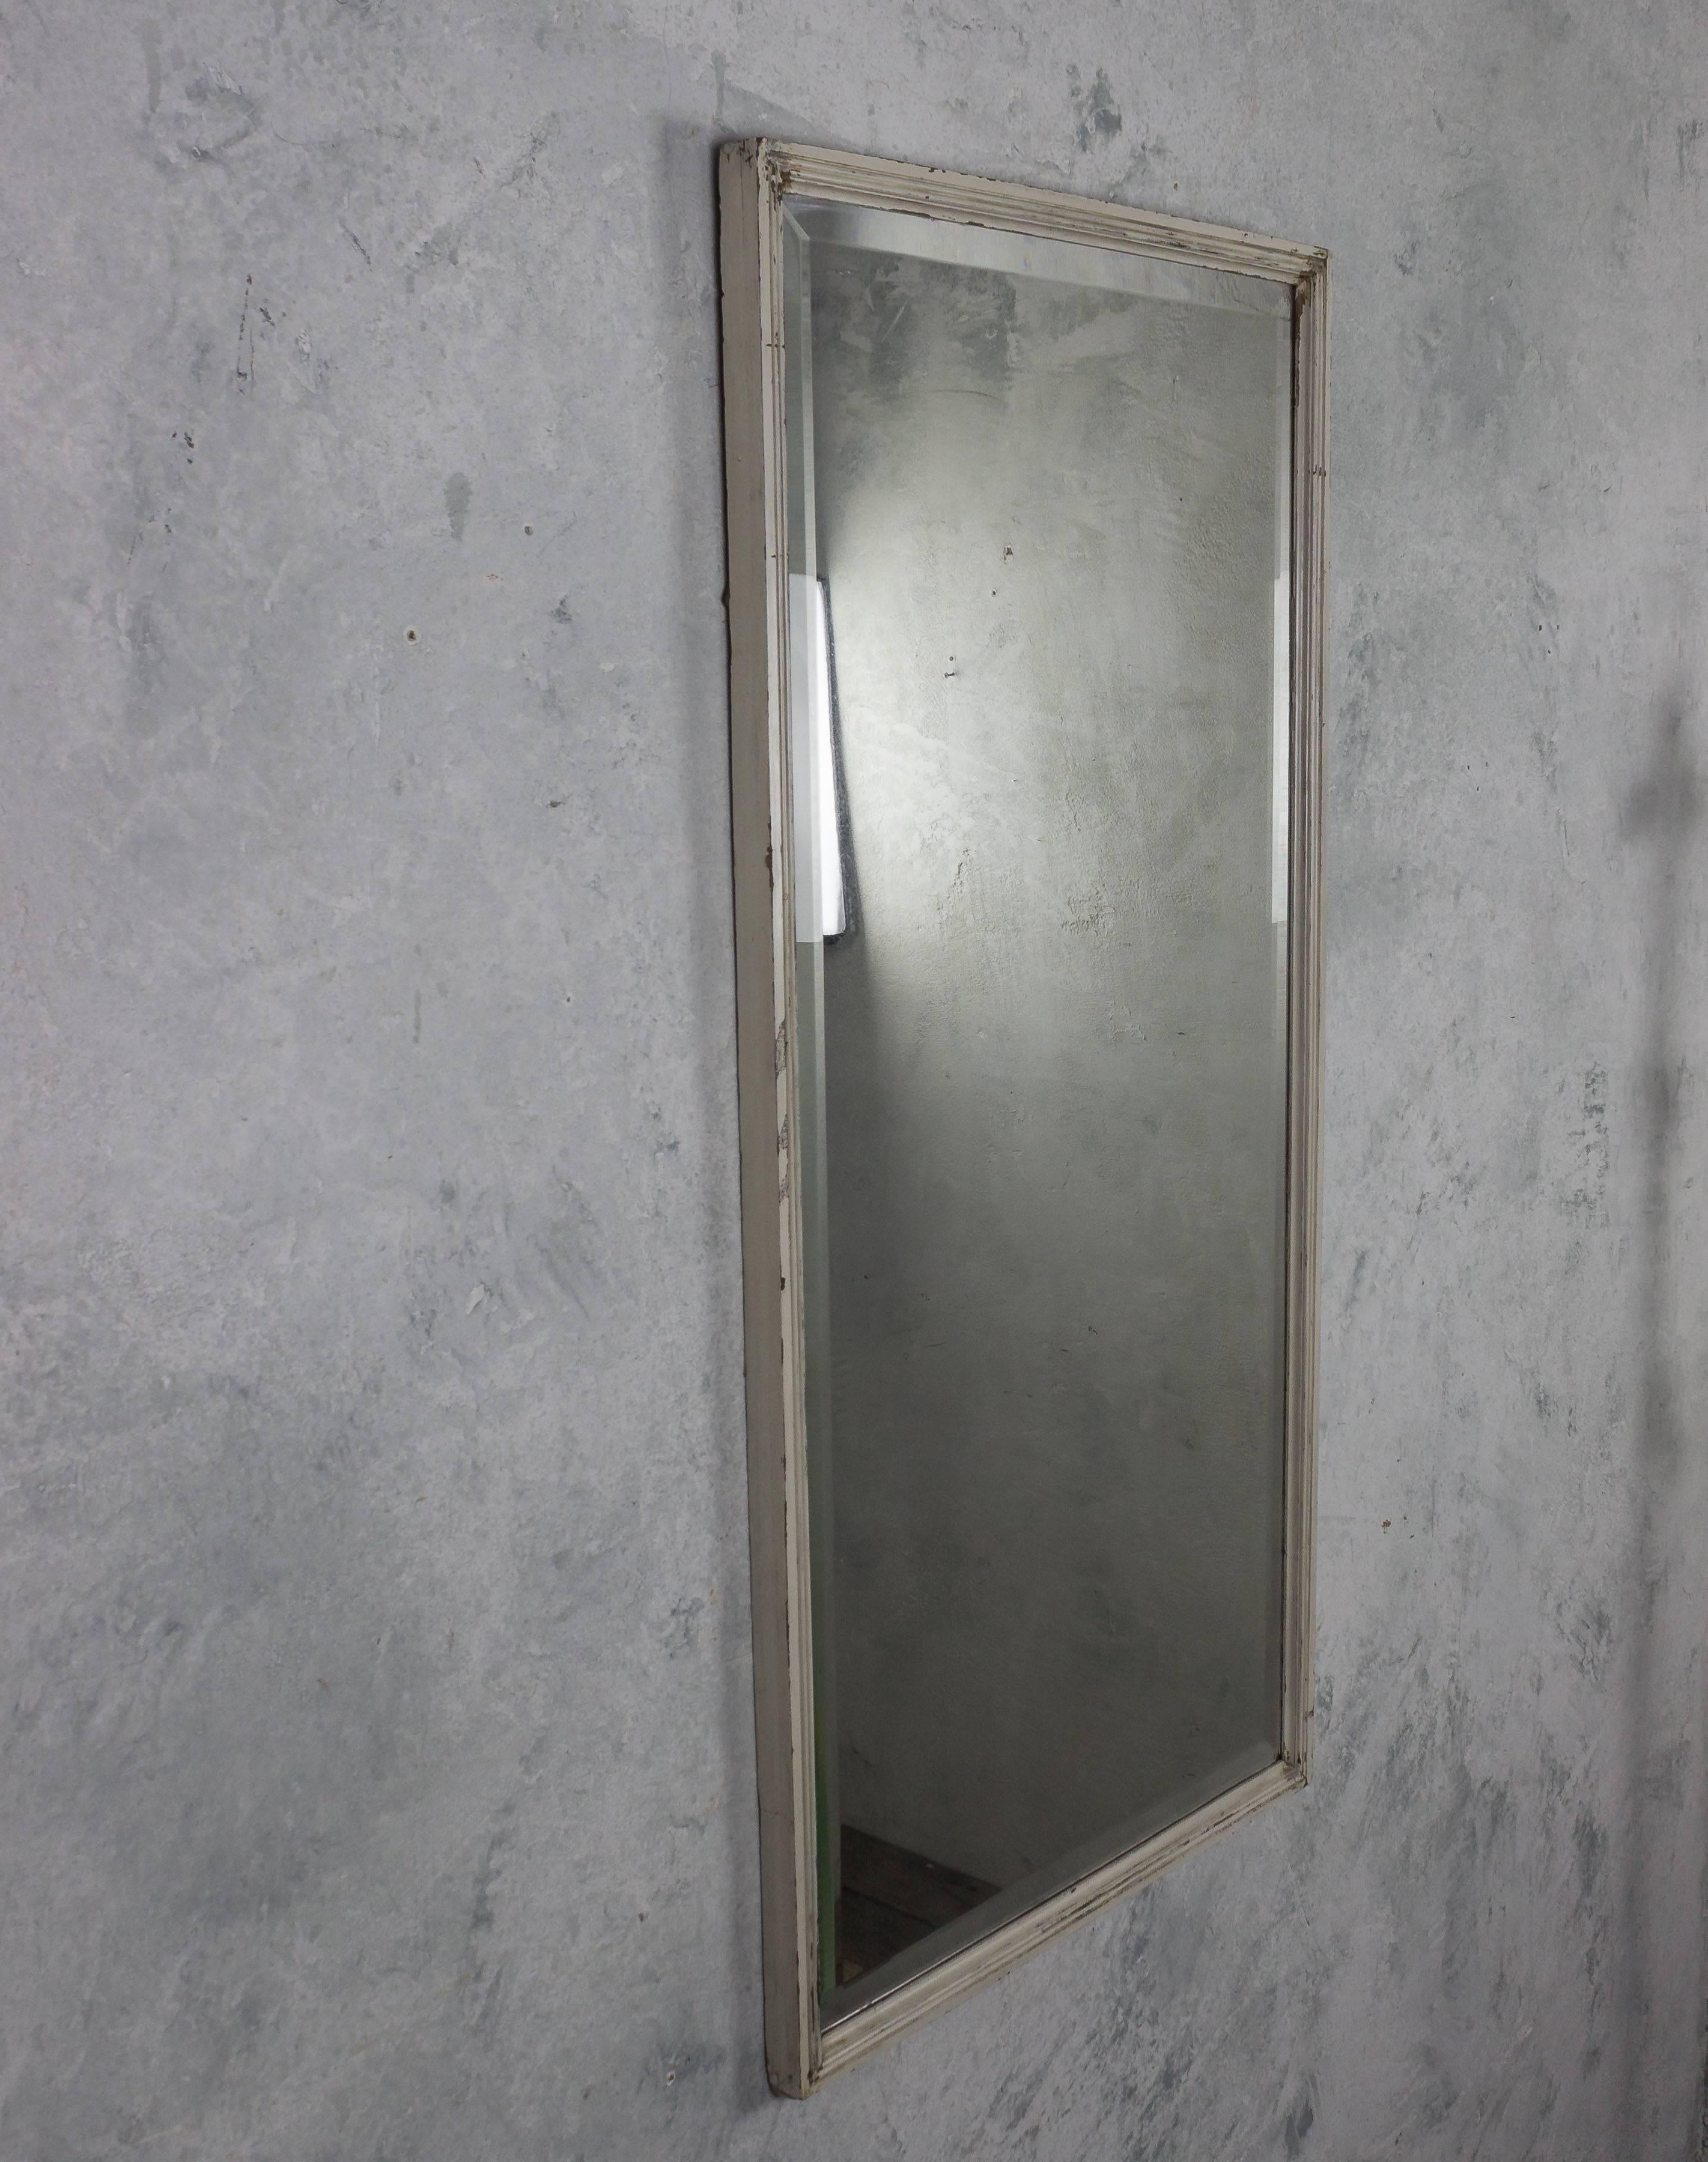 Miroir biseauté français du début du XXe siècle avec un étroit cadre blanc cannelé. Vintage, le miroir est fortement endommagé.

Réf. : DM0310-01

Dimensions : 47.5 